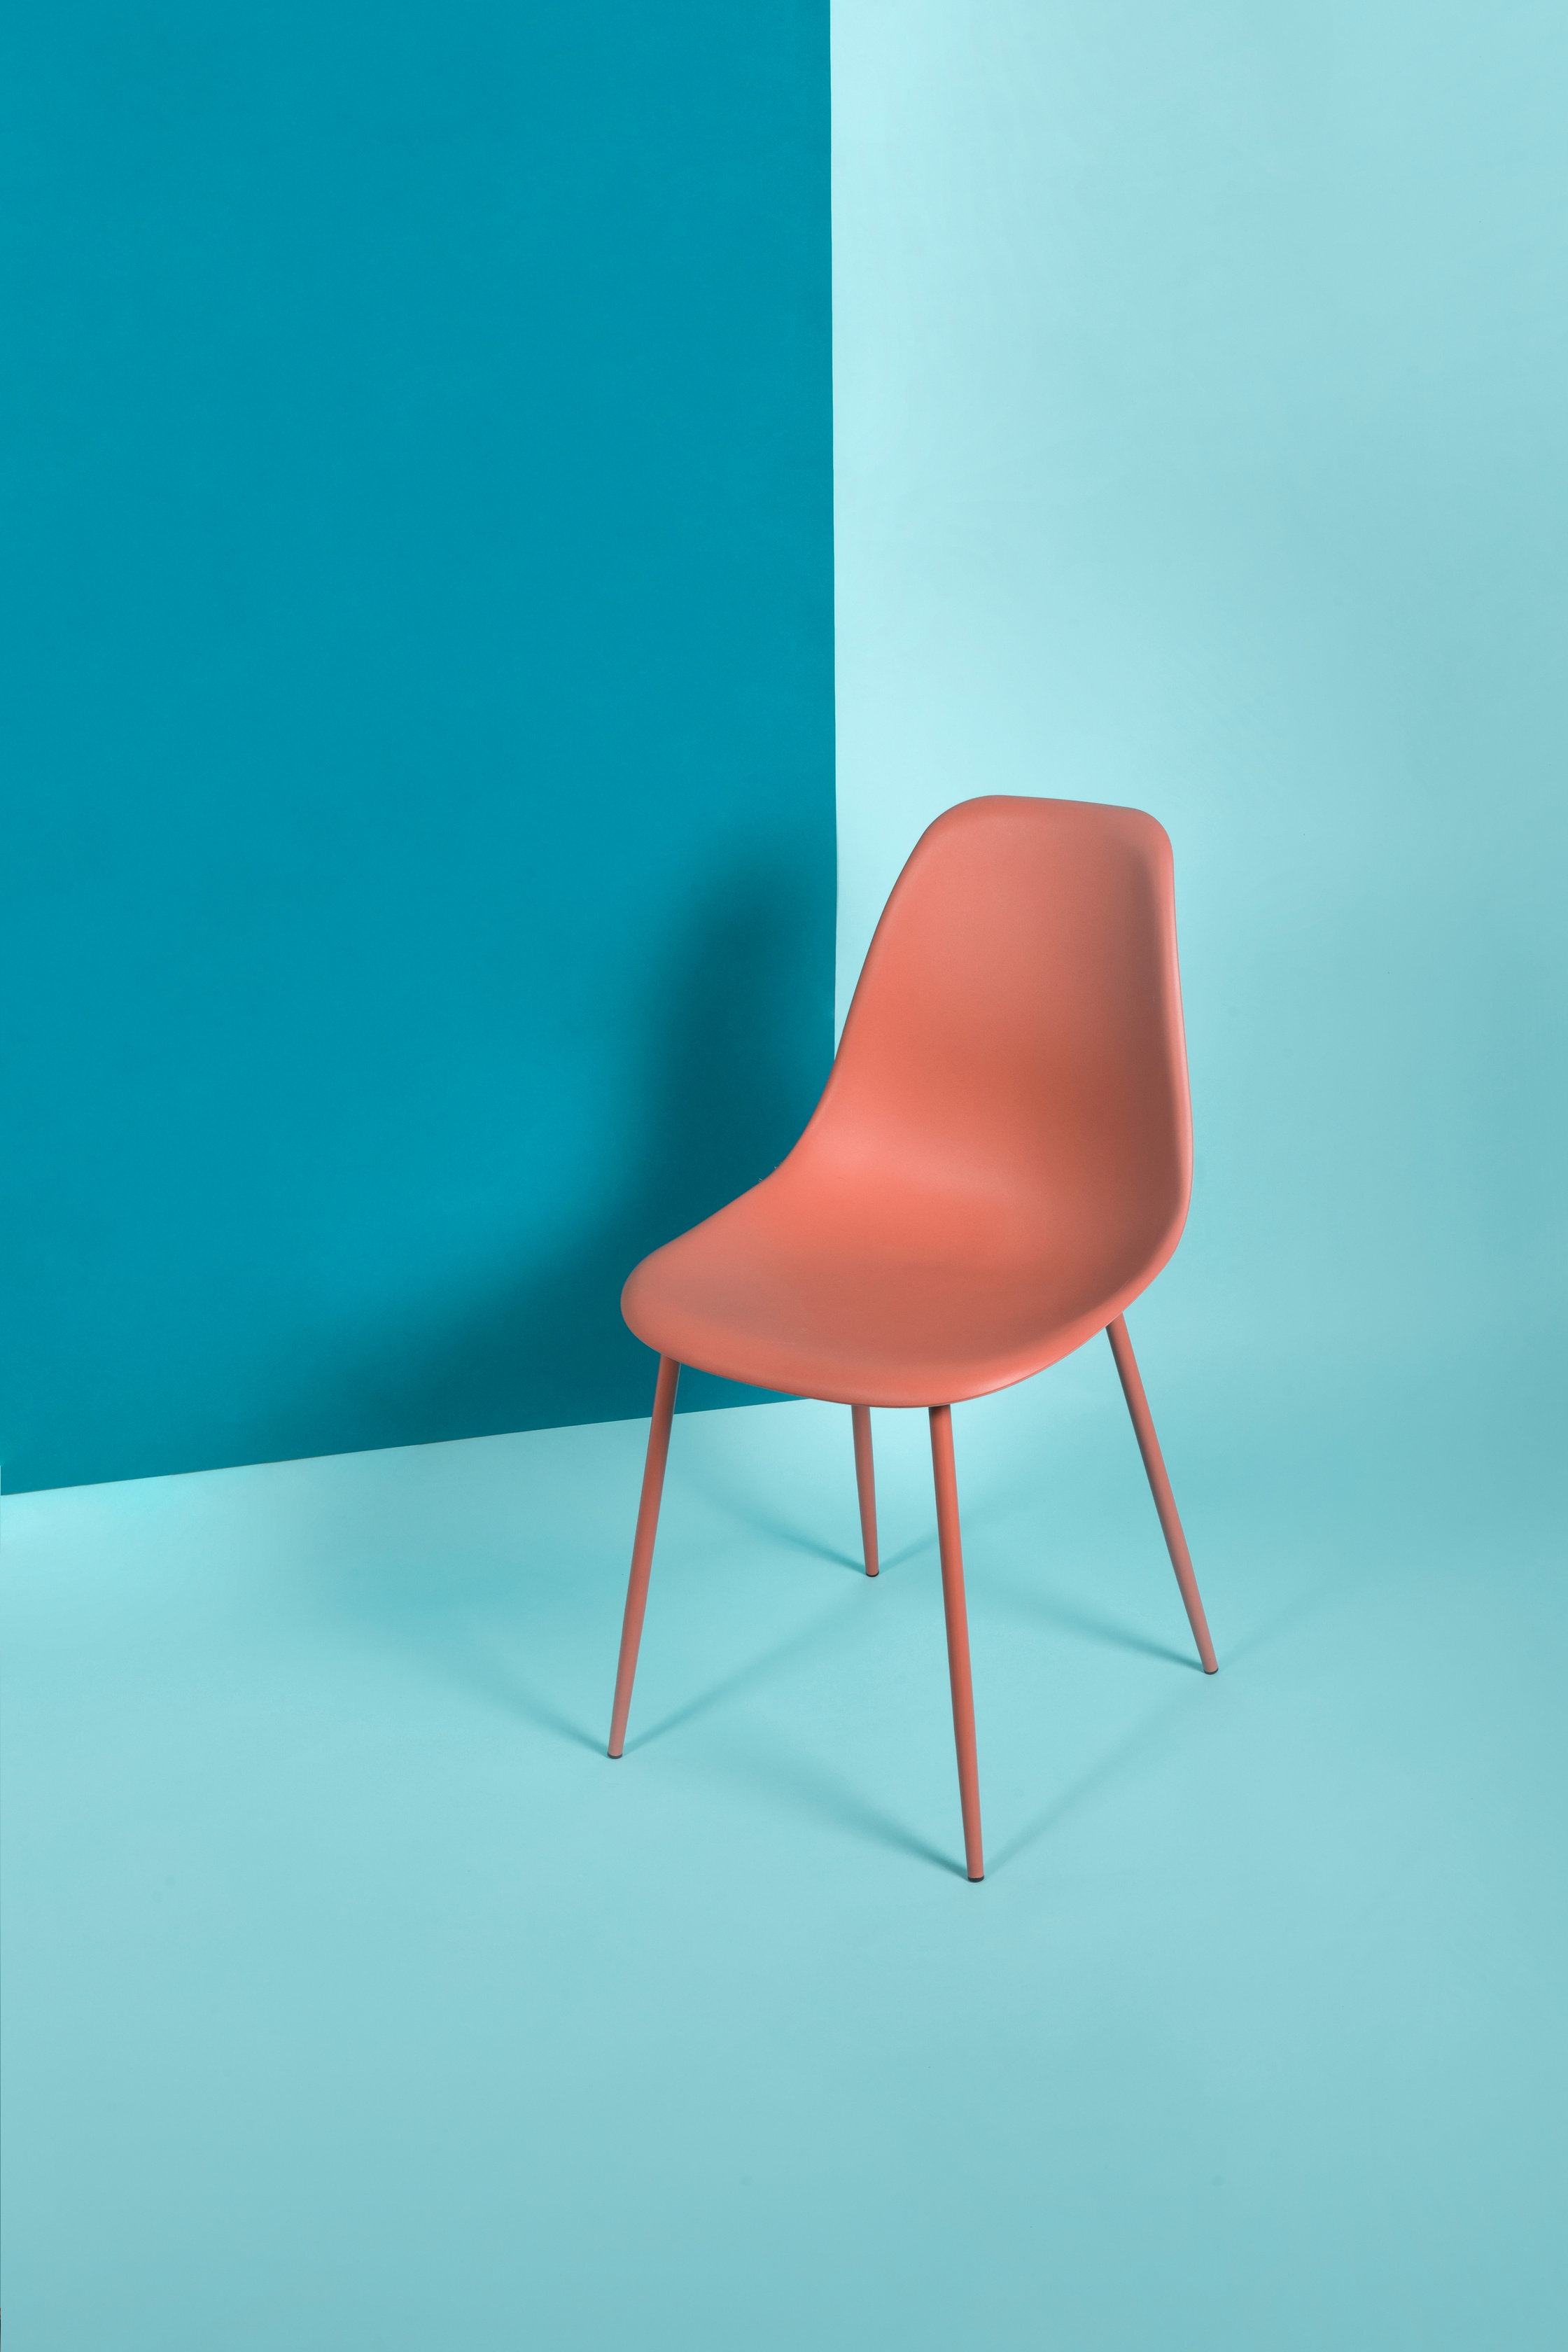 Orange Chair on Blue Background